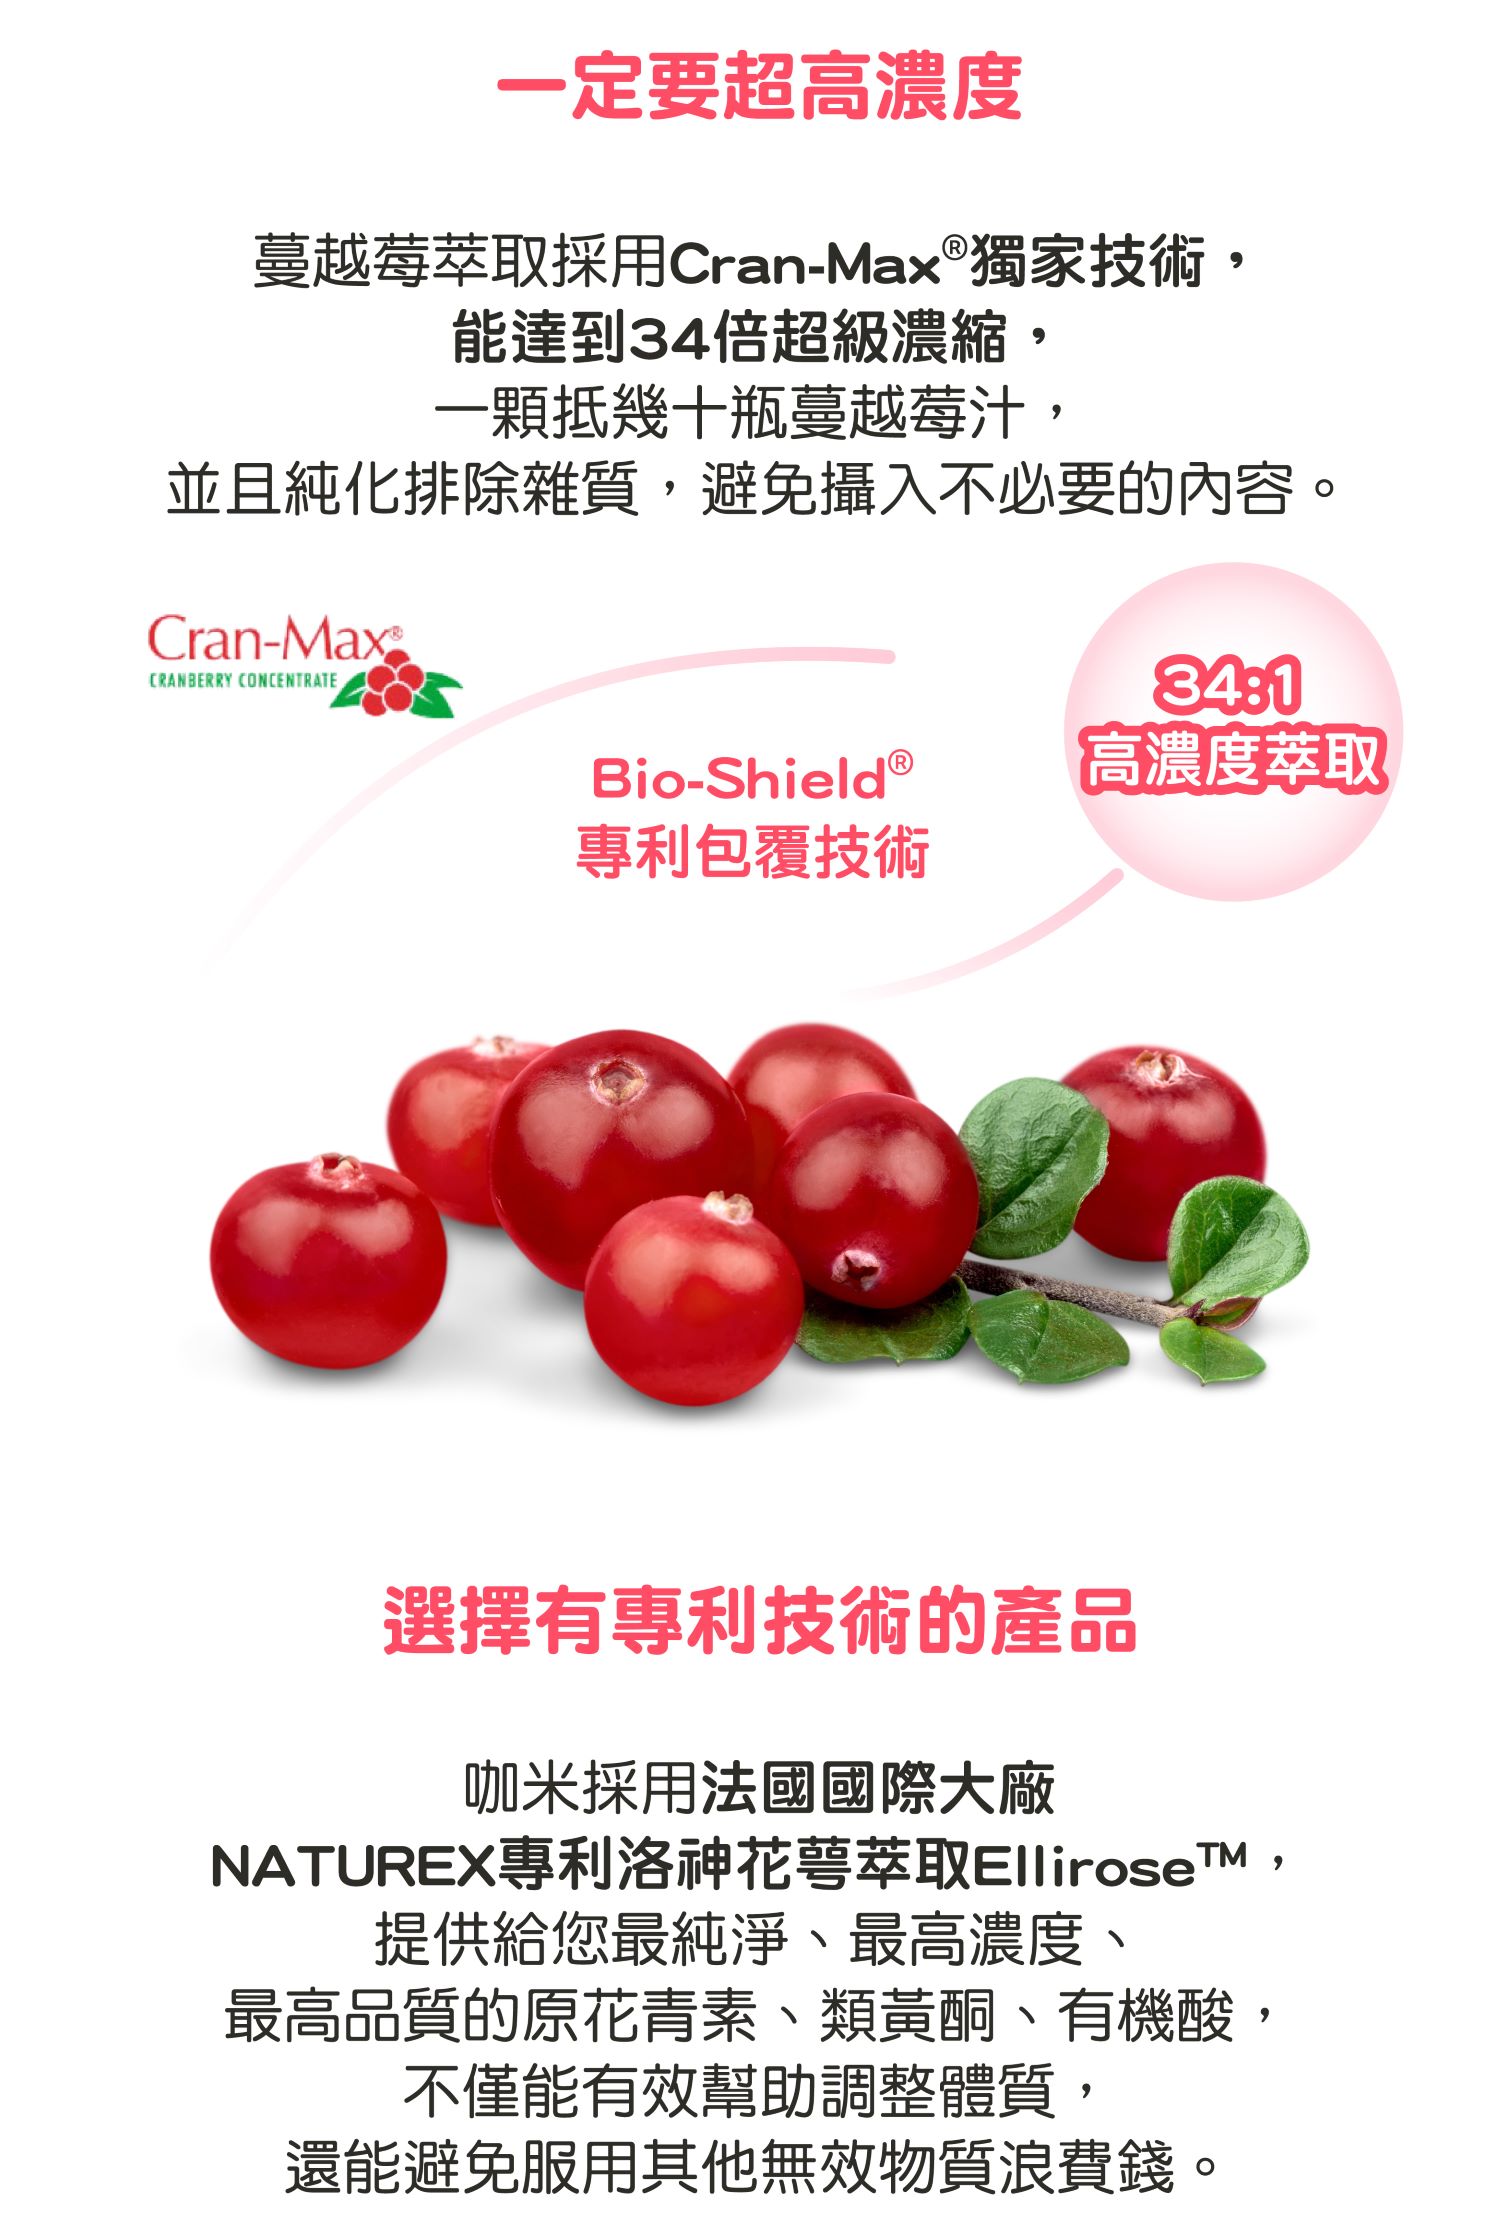 【一定要超高濃度】  蔓越莓萃取採用Cran-Max®獨家技術，能達到34倍超級濃縮，一顆抵幾十瓶蔓越莓汁，並且純化排除雜質，避免攝入不必要的內容。 